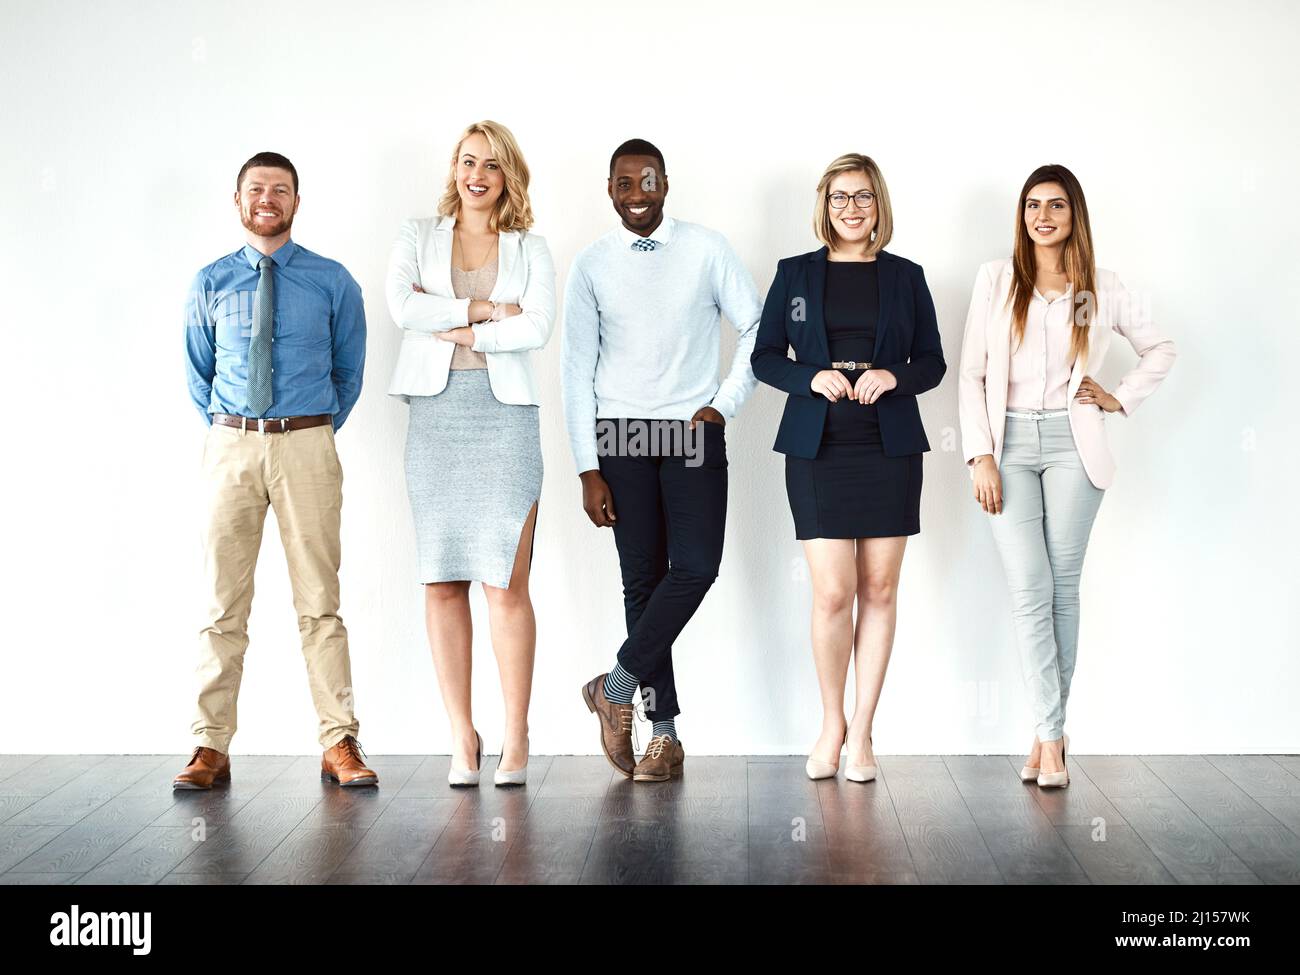 Wir nennen die Schüsse. Porträt einer Gruppe von Arbeitskollegen, die in einer Schlange stehen, während sie ihre drahtlosen Geräte vor weißem Hintergrund verwenden. Stockfoto